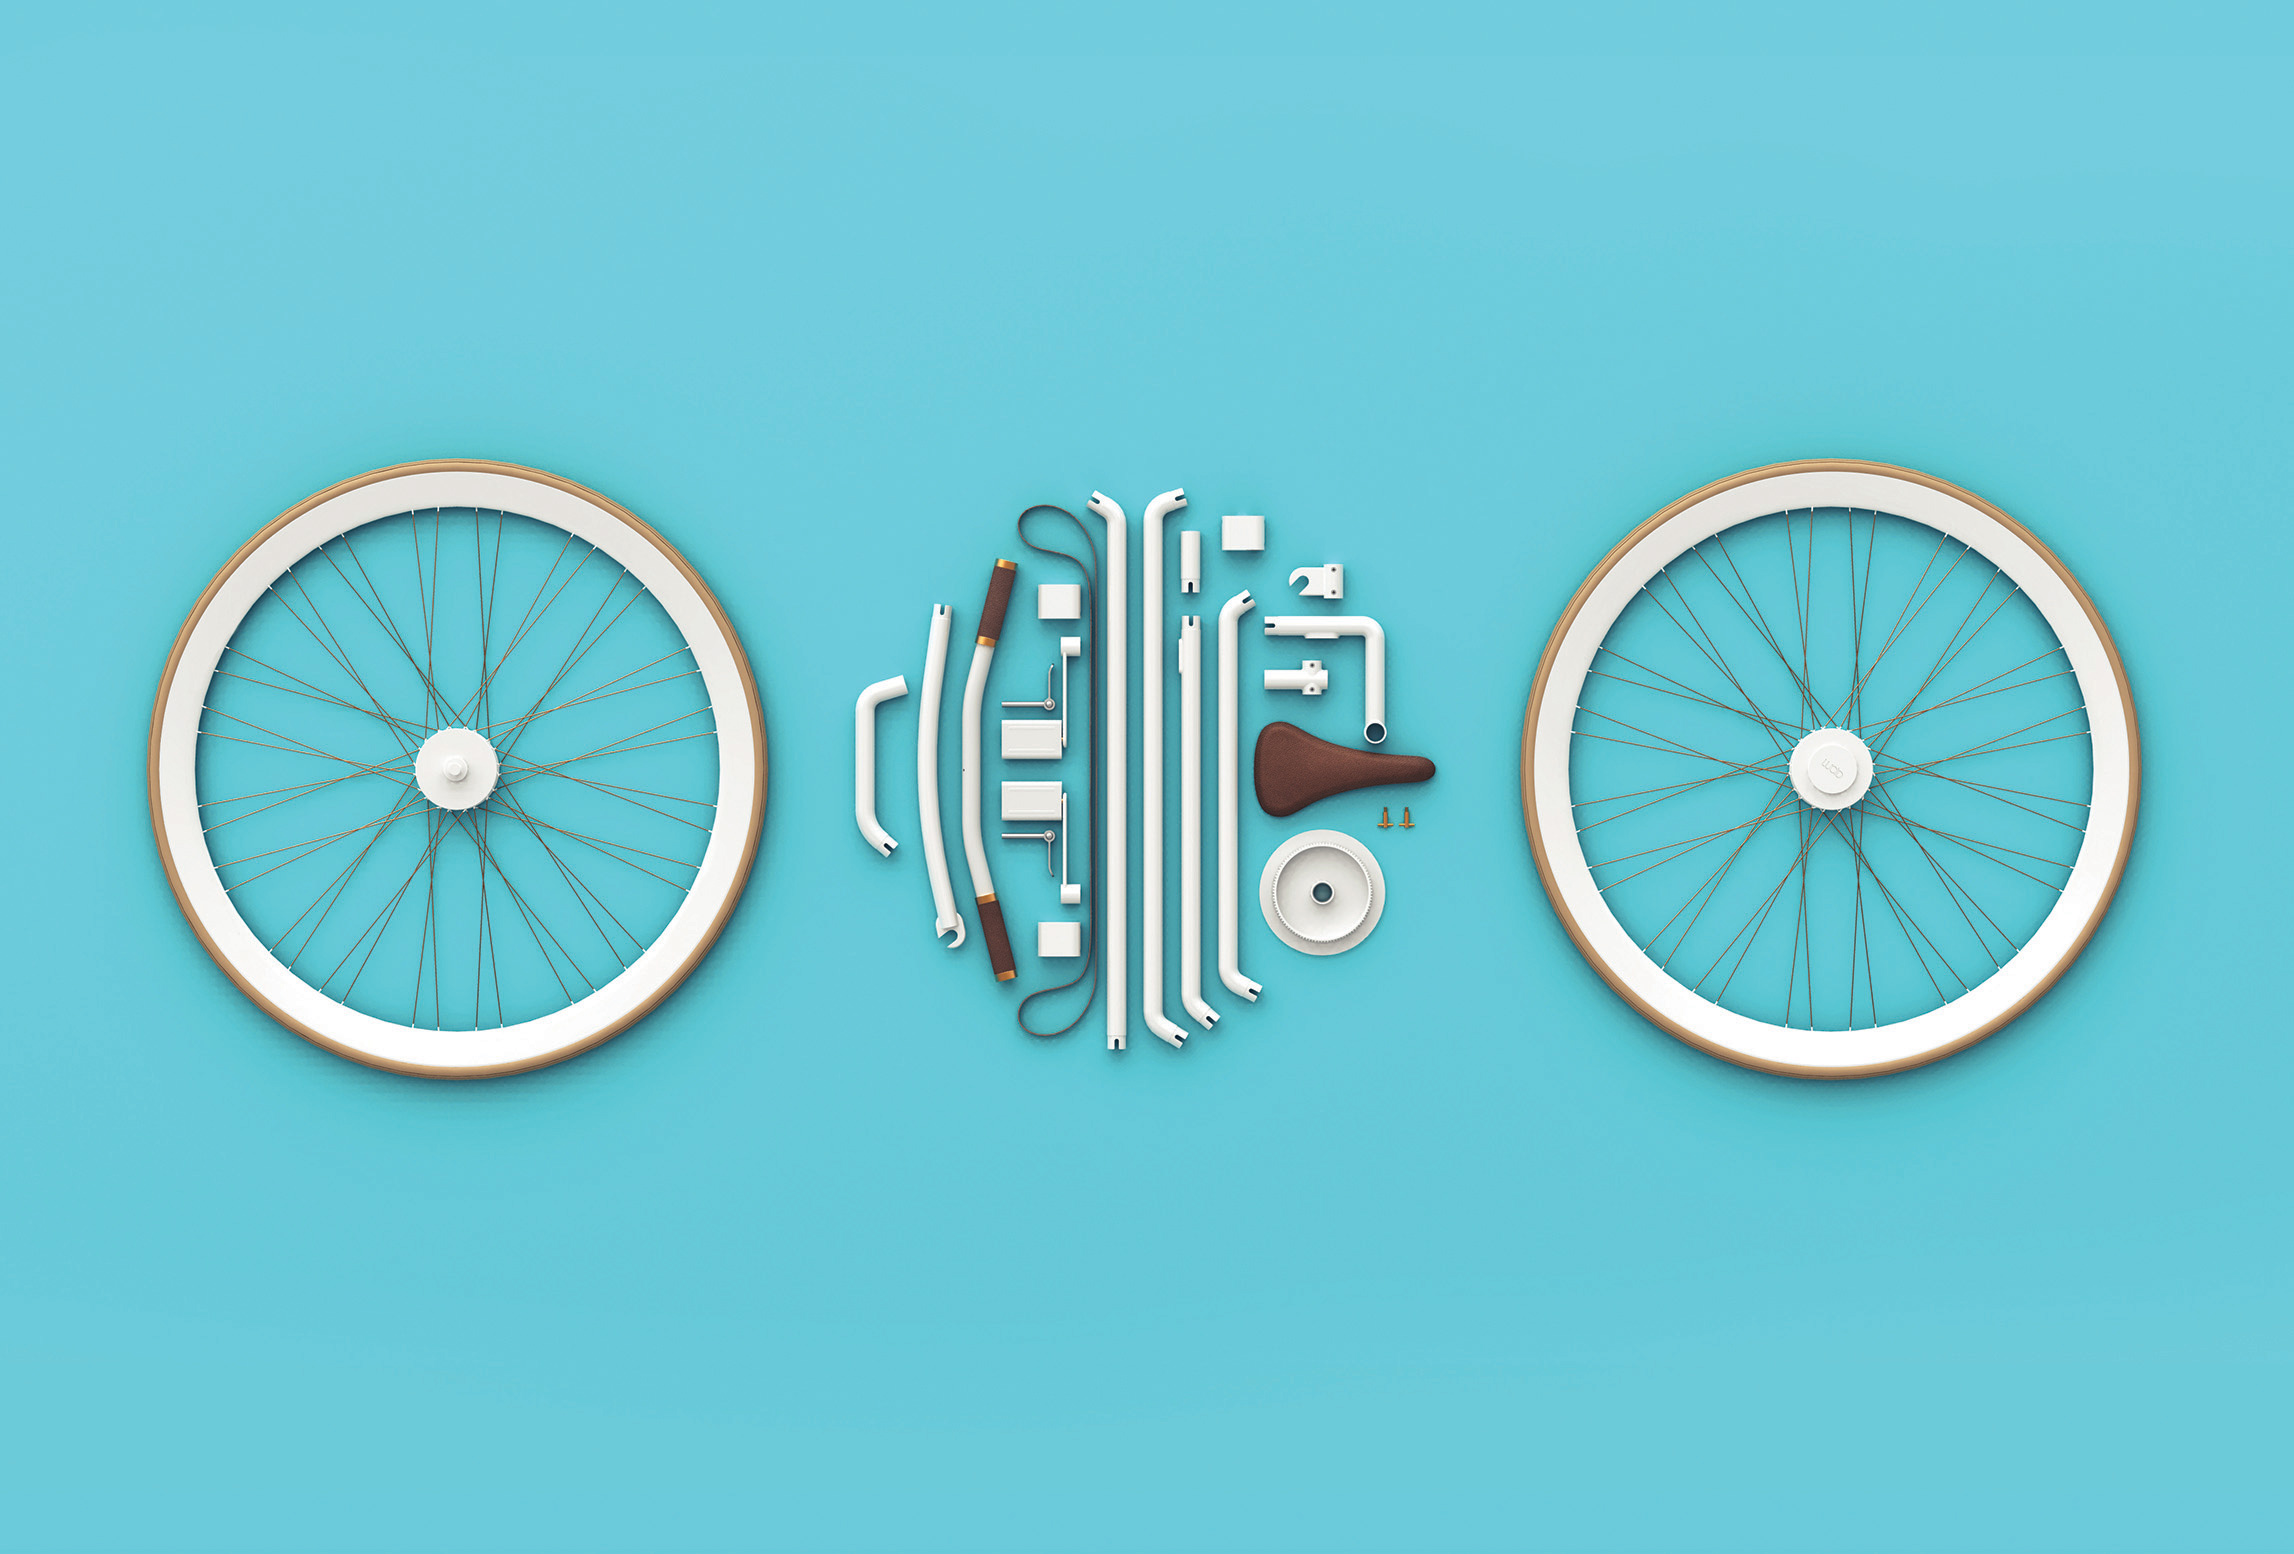 kit-bike-lucid-design-02